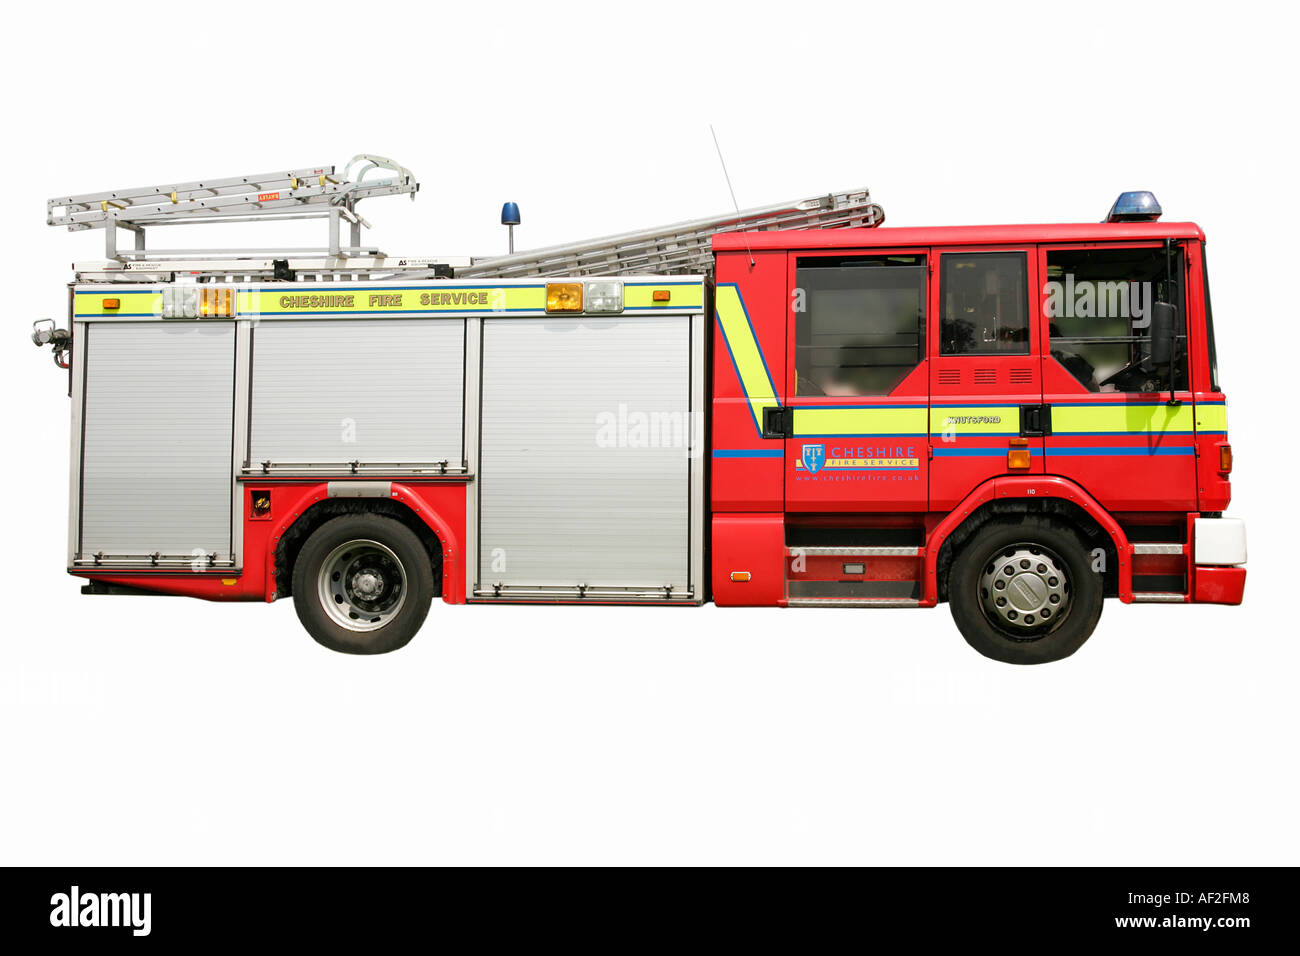 La voie d'urgence incendie rue keeper alarme vitesse rouge danger courageux destructeurs sauver la vie de l'échelle de l'eau brigade incendie Cheshire bucket Banque D'Images